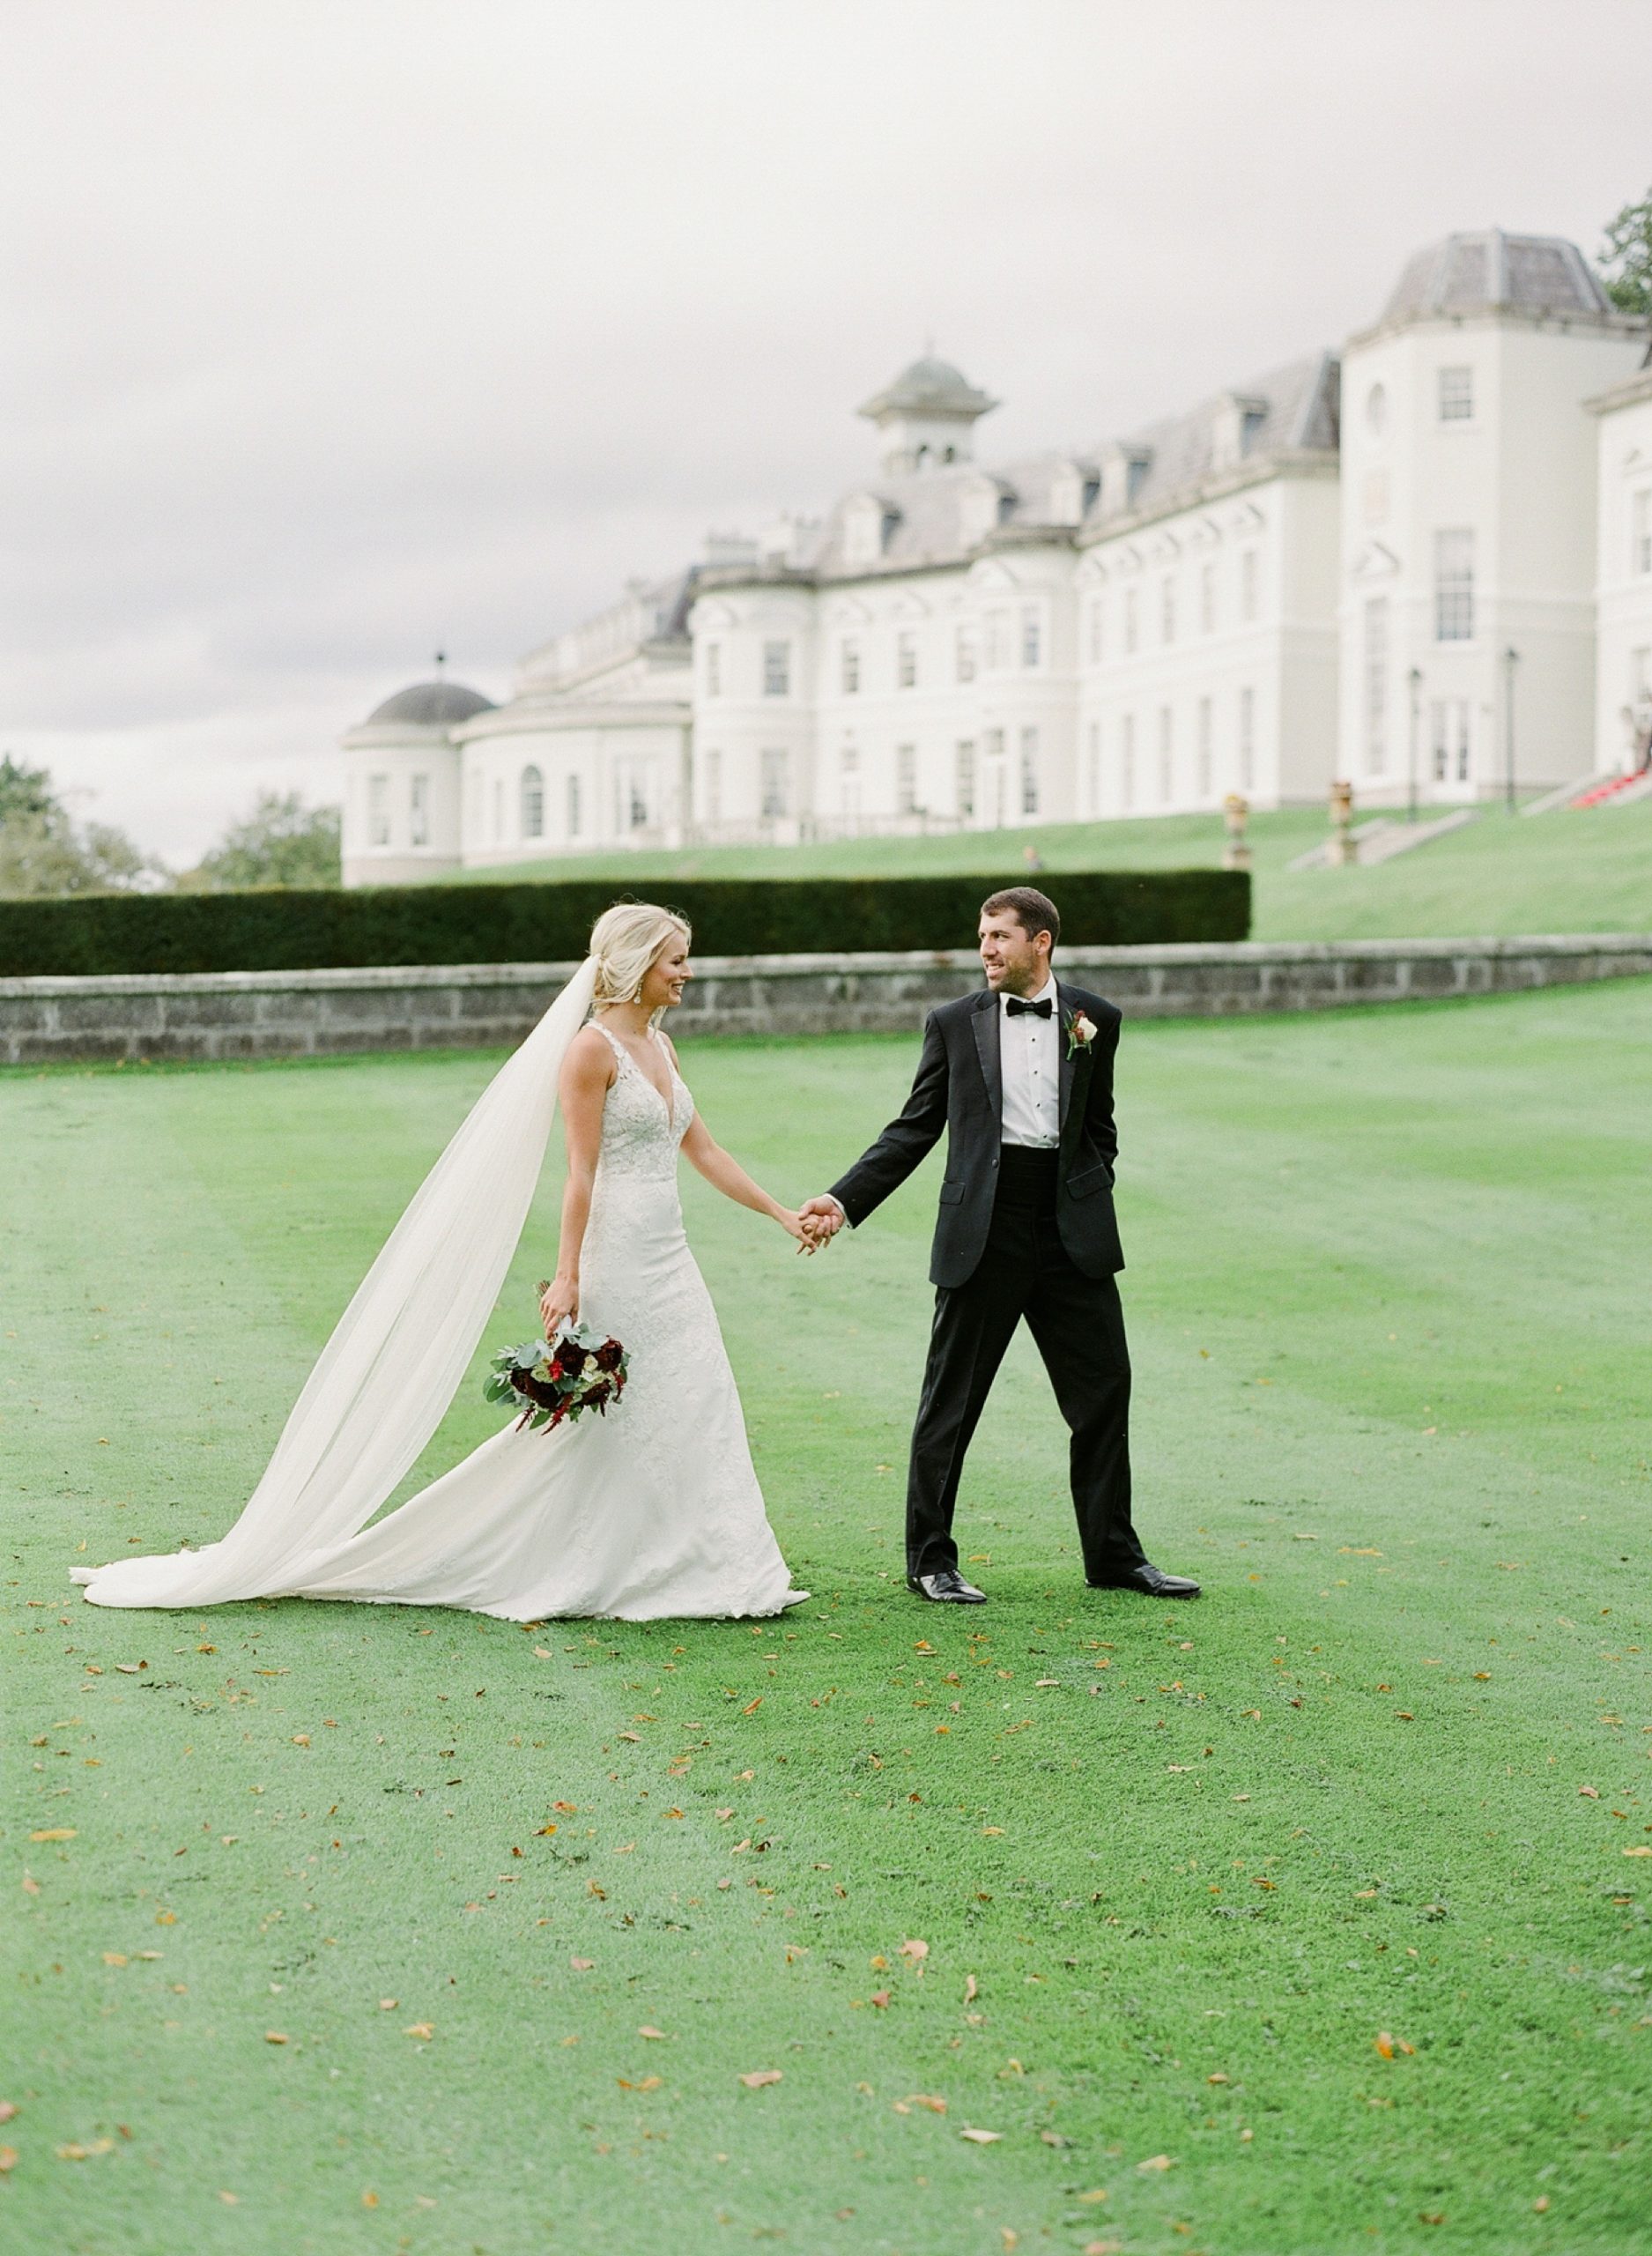 Jessie-Barksdale-Photography_Ireland-destination-wedding-at-The-K-Club-Resort__0040.jpg